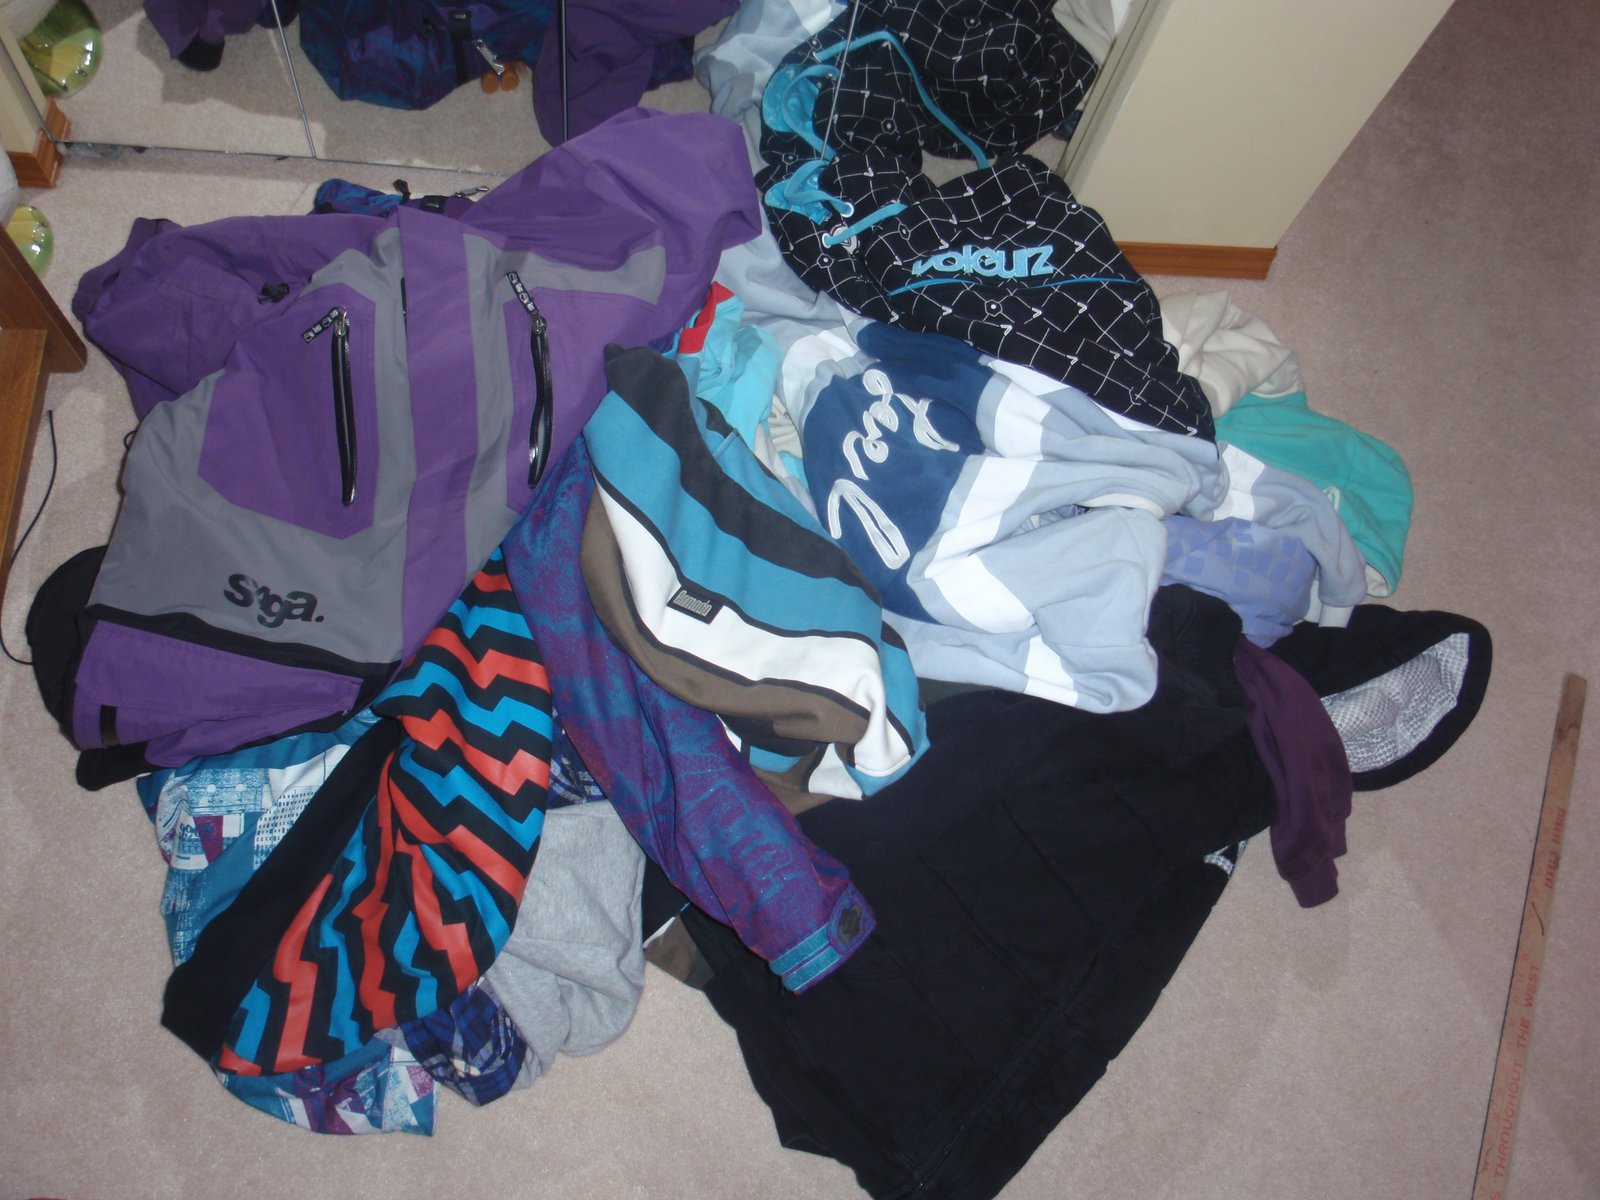 Clothing pile